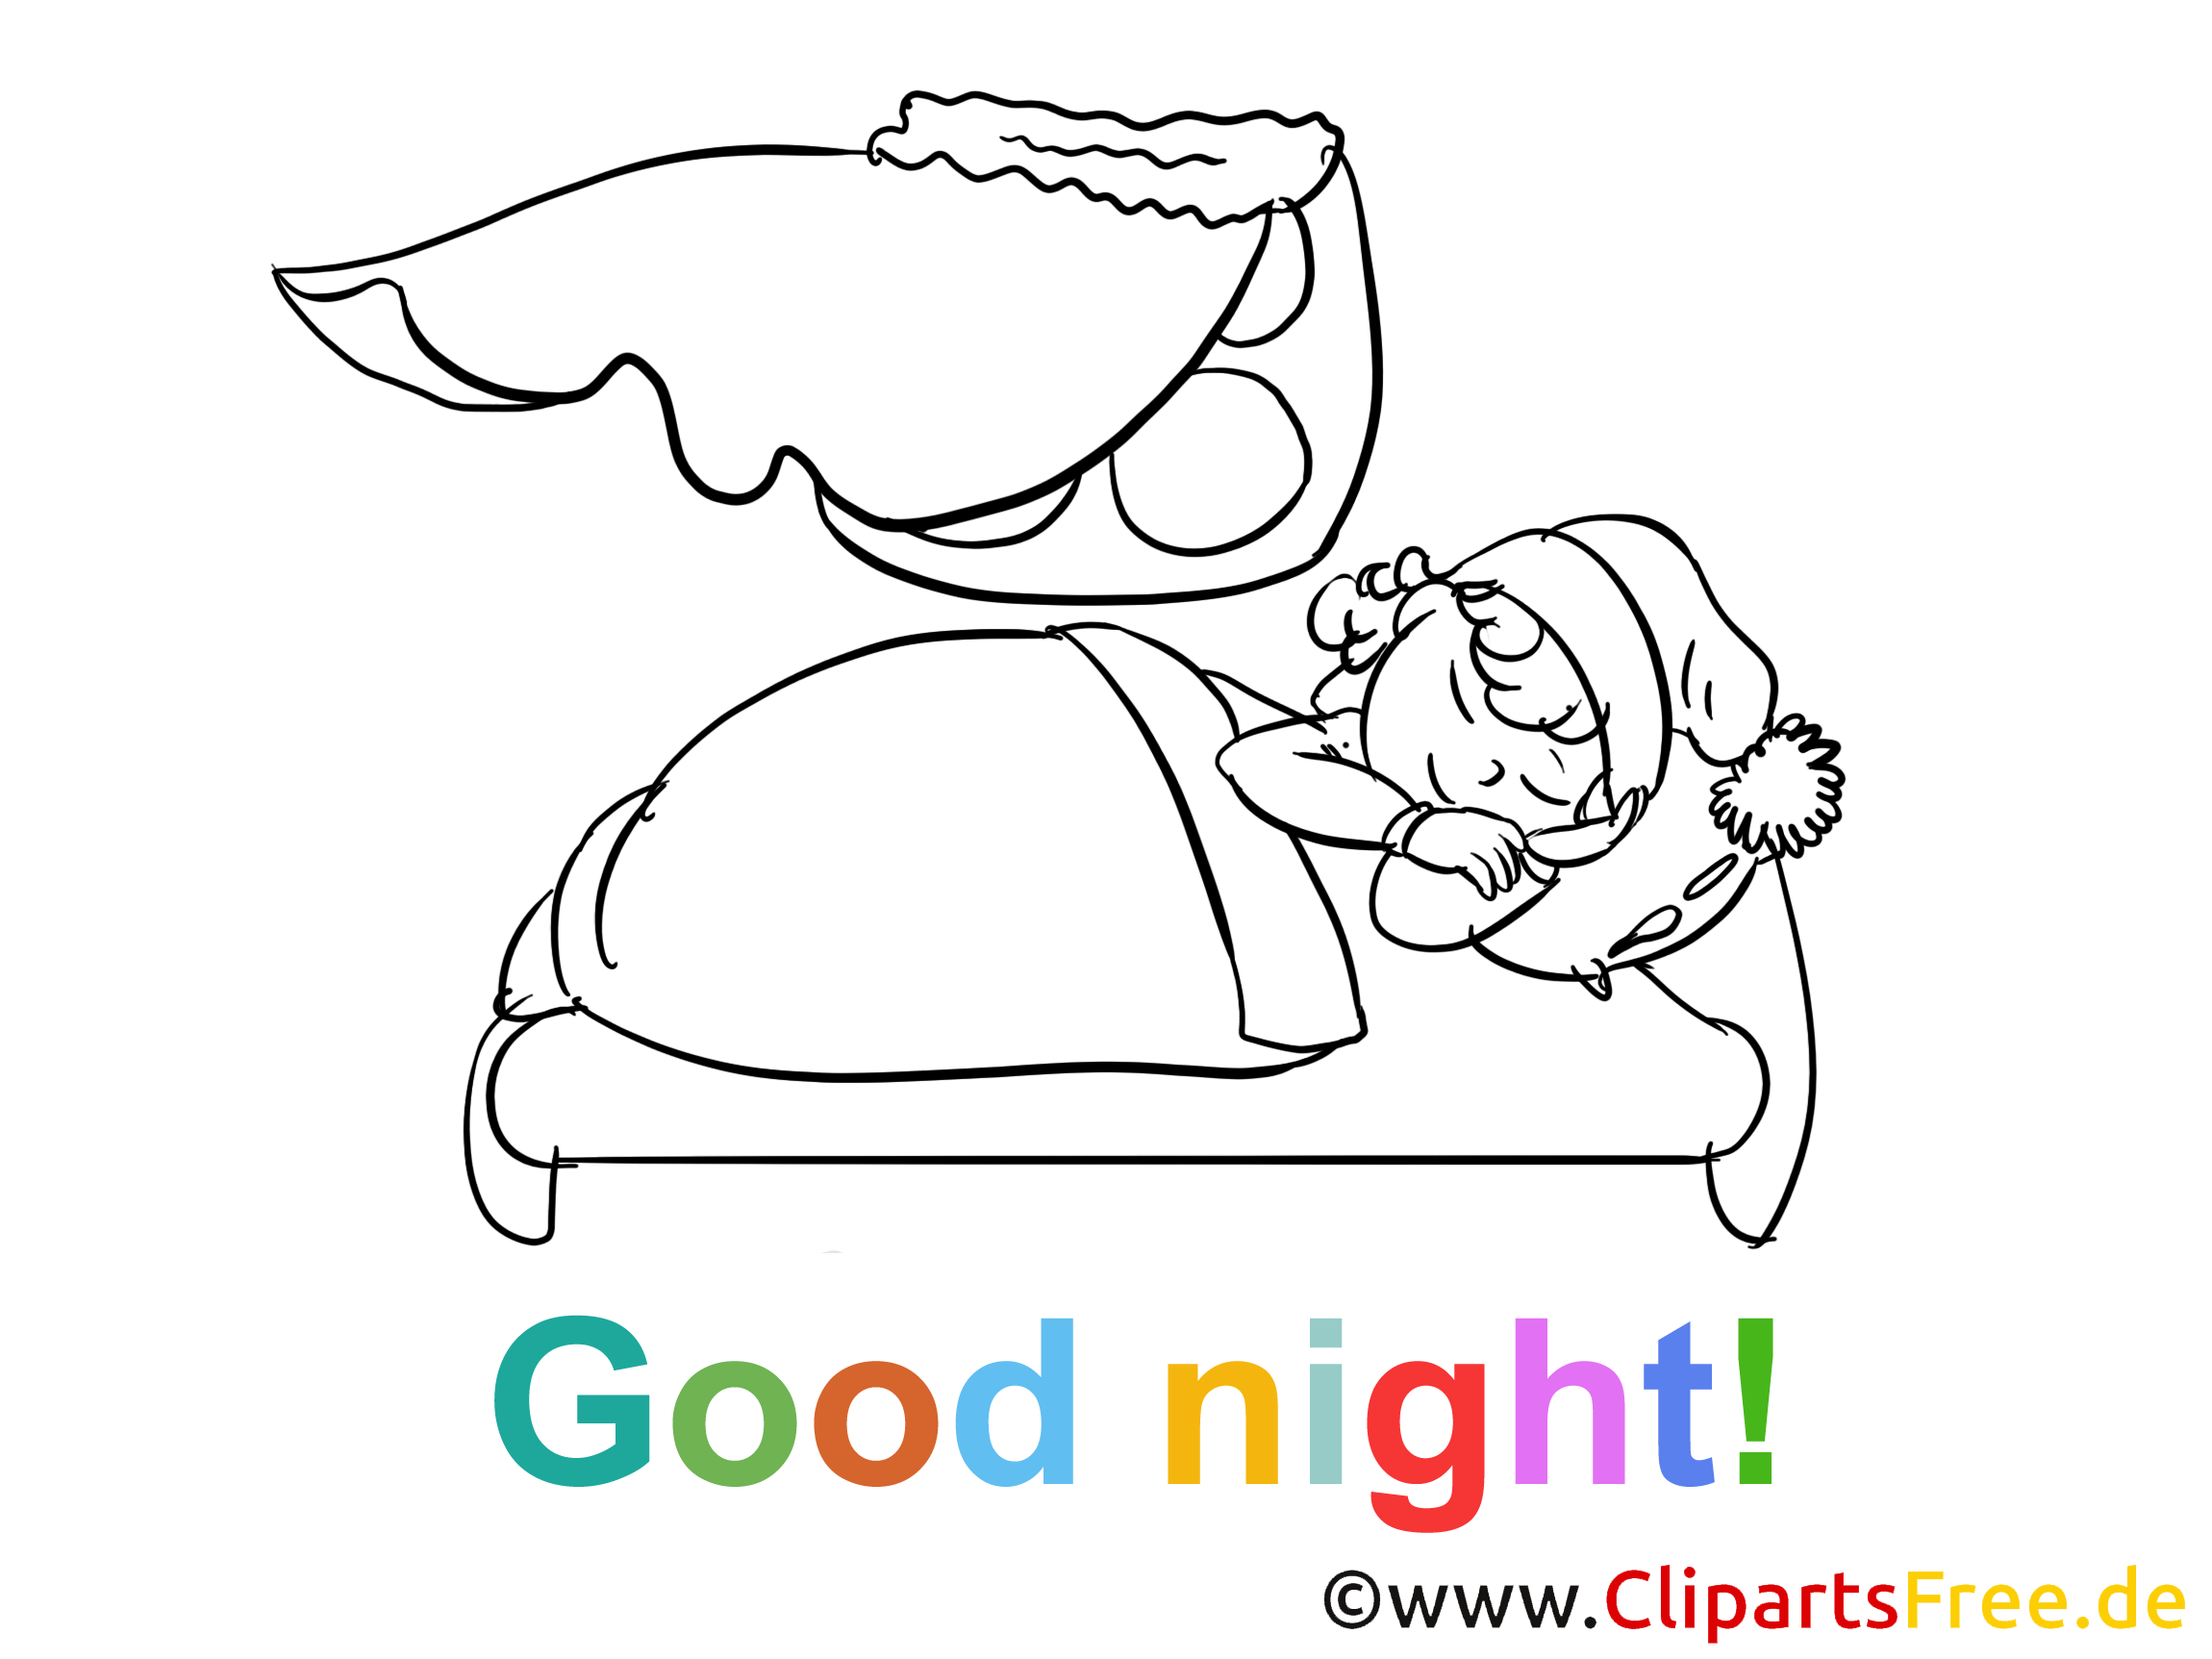 Bonne nuit image à colorier gratuite